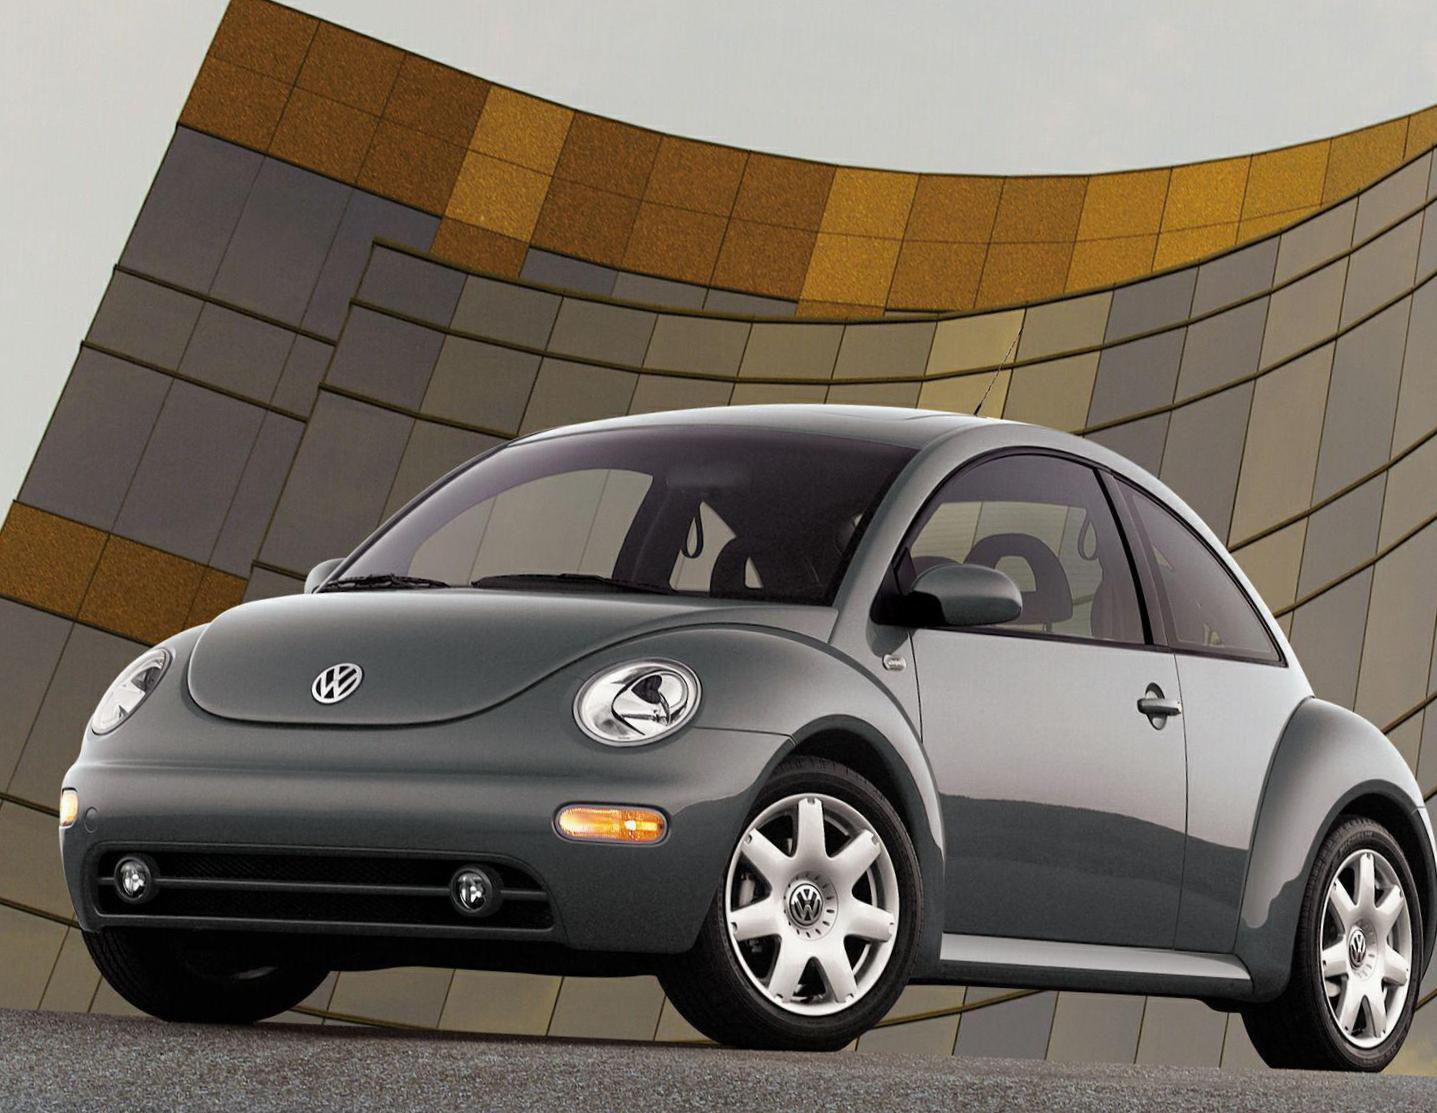 New Beetle Volkswagen used 2012